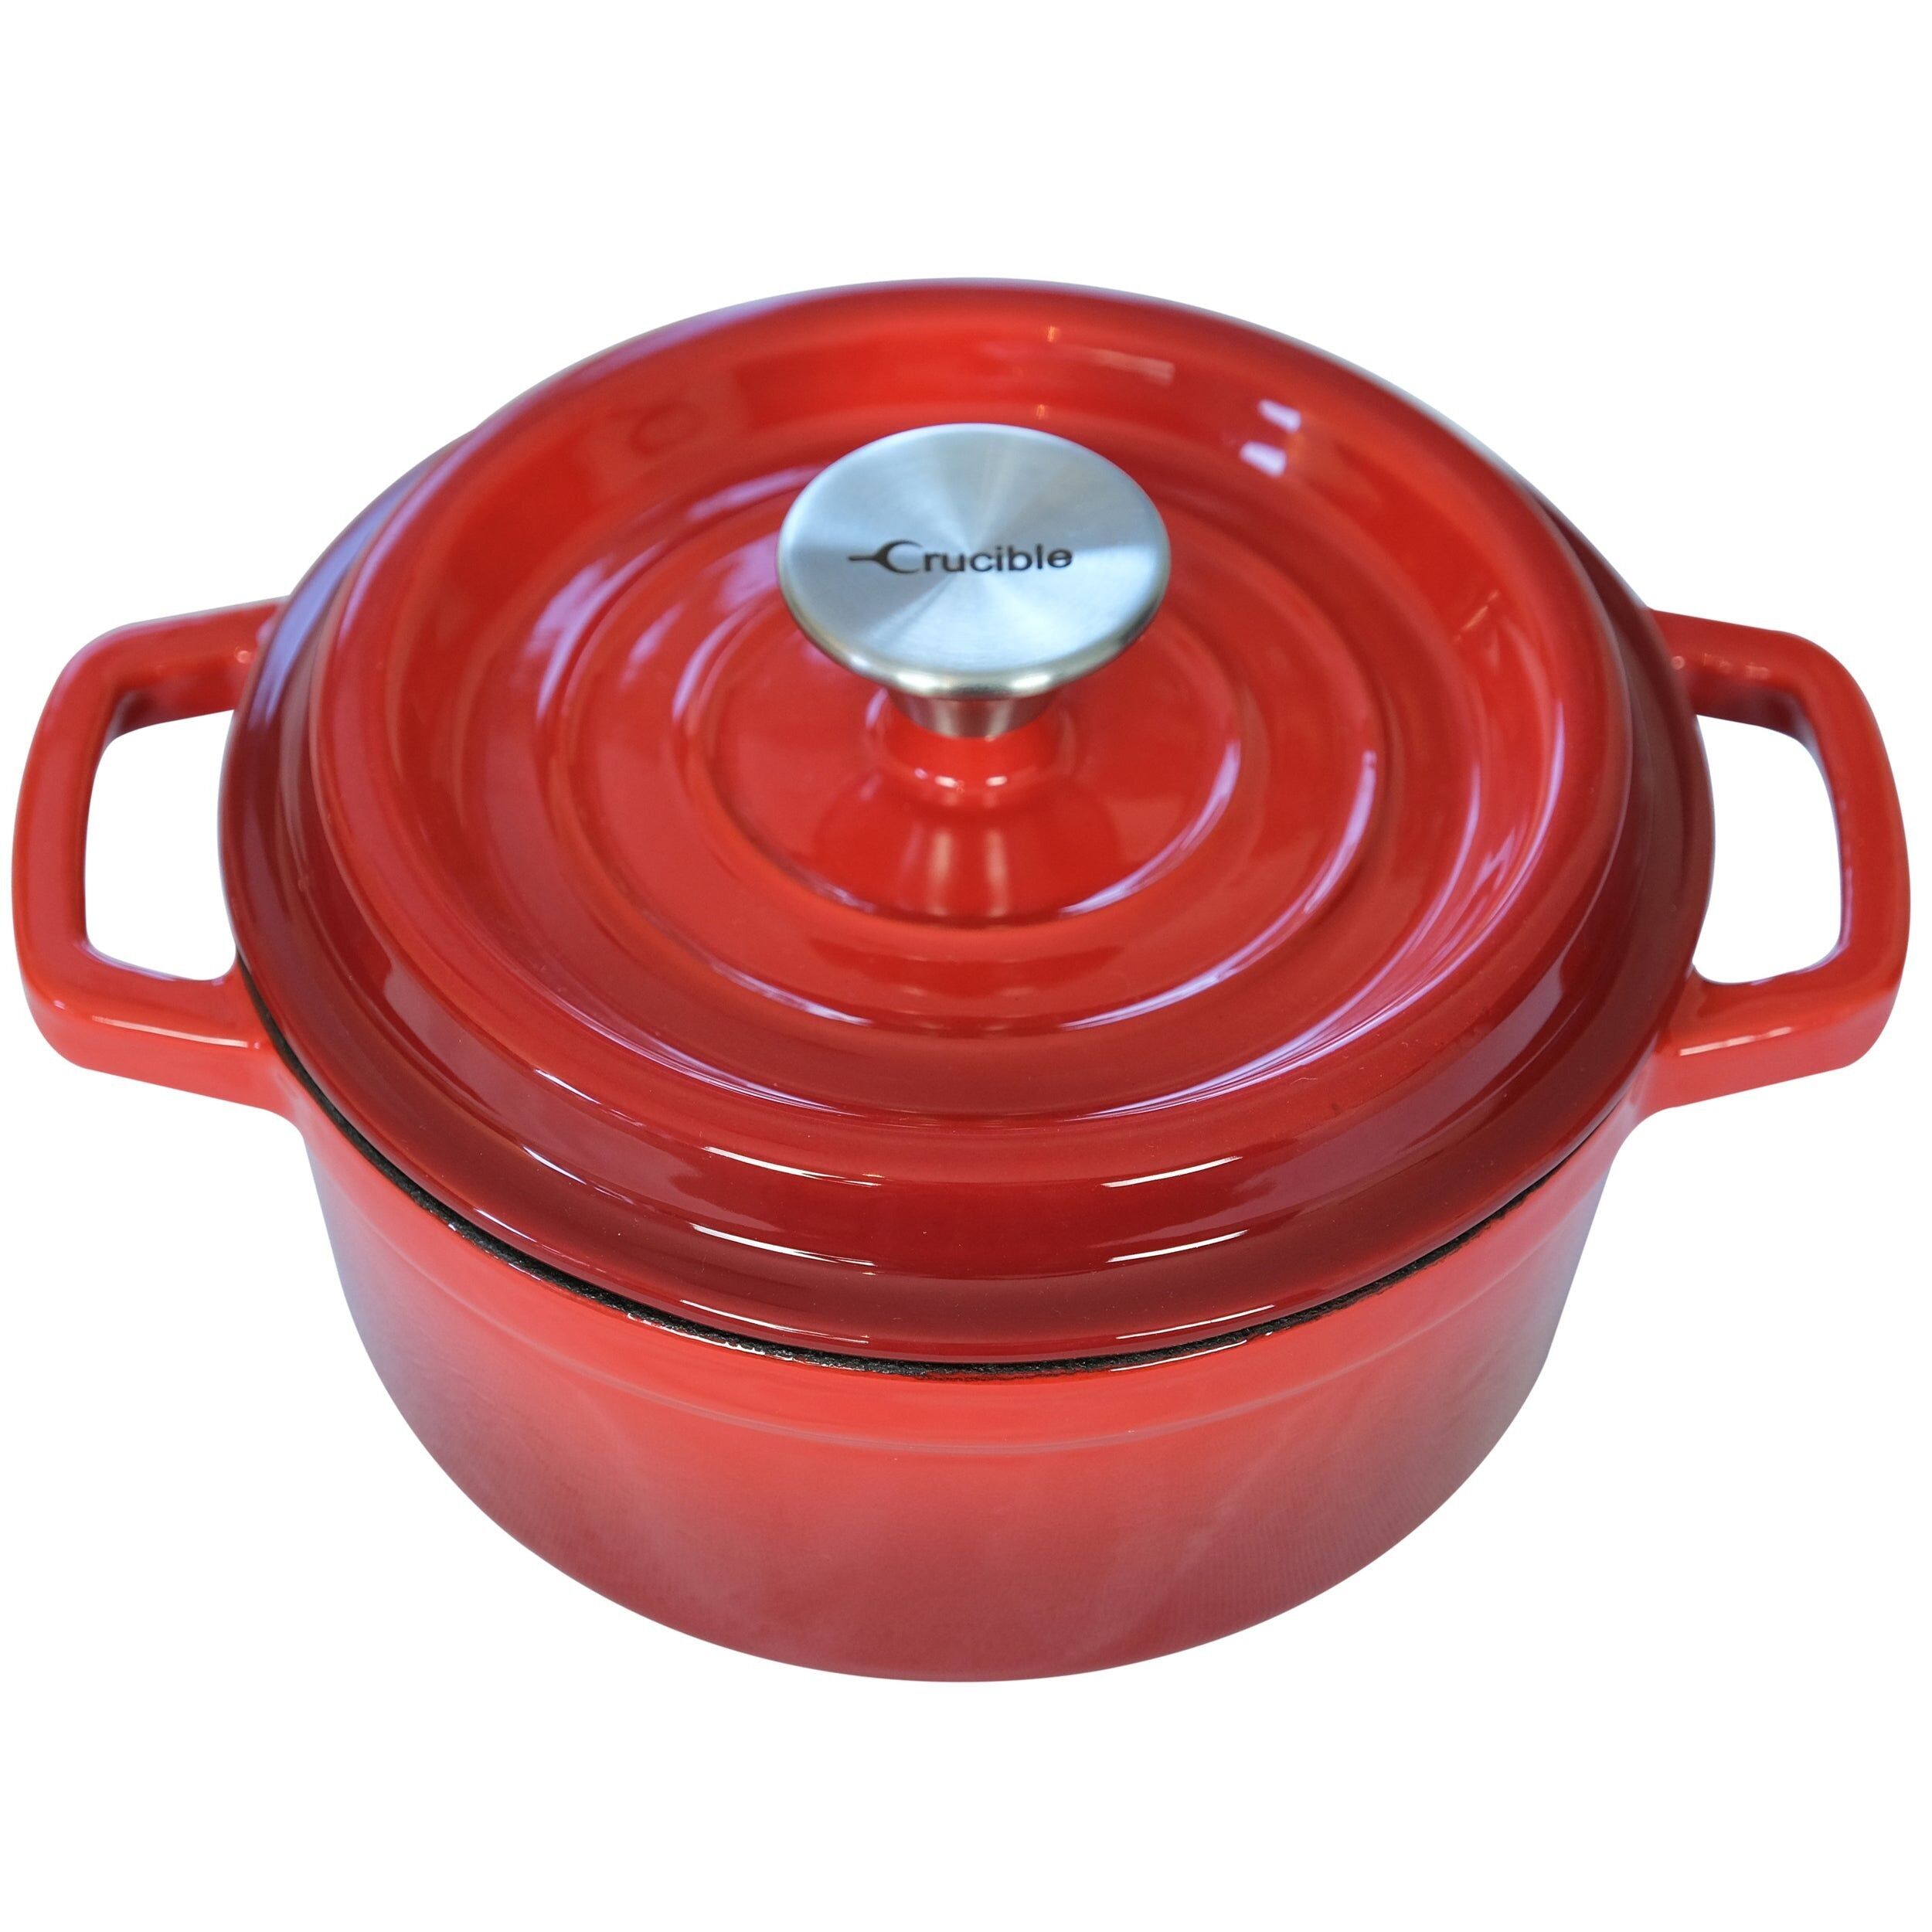 Buy wholesale Enameled Cast Iron Dutch Oven Pot (7.87